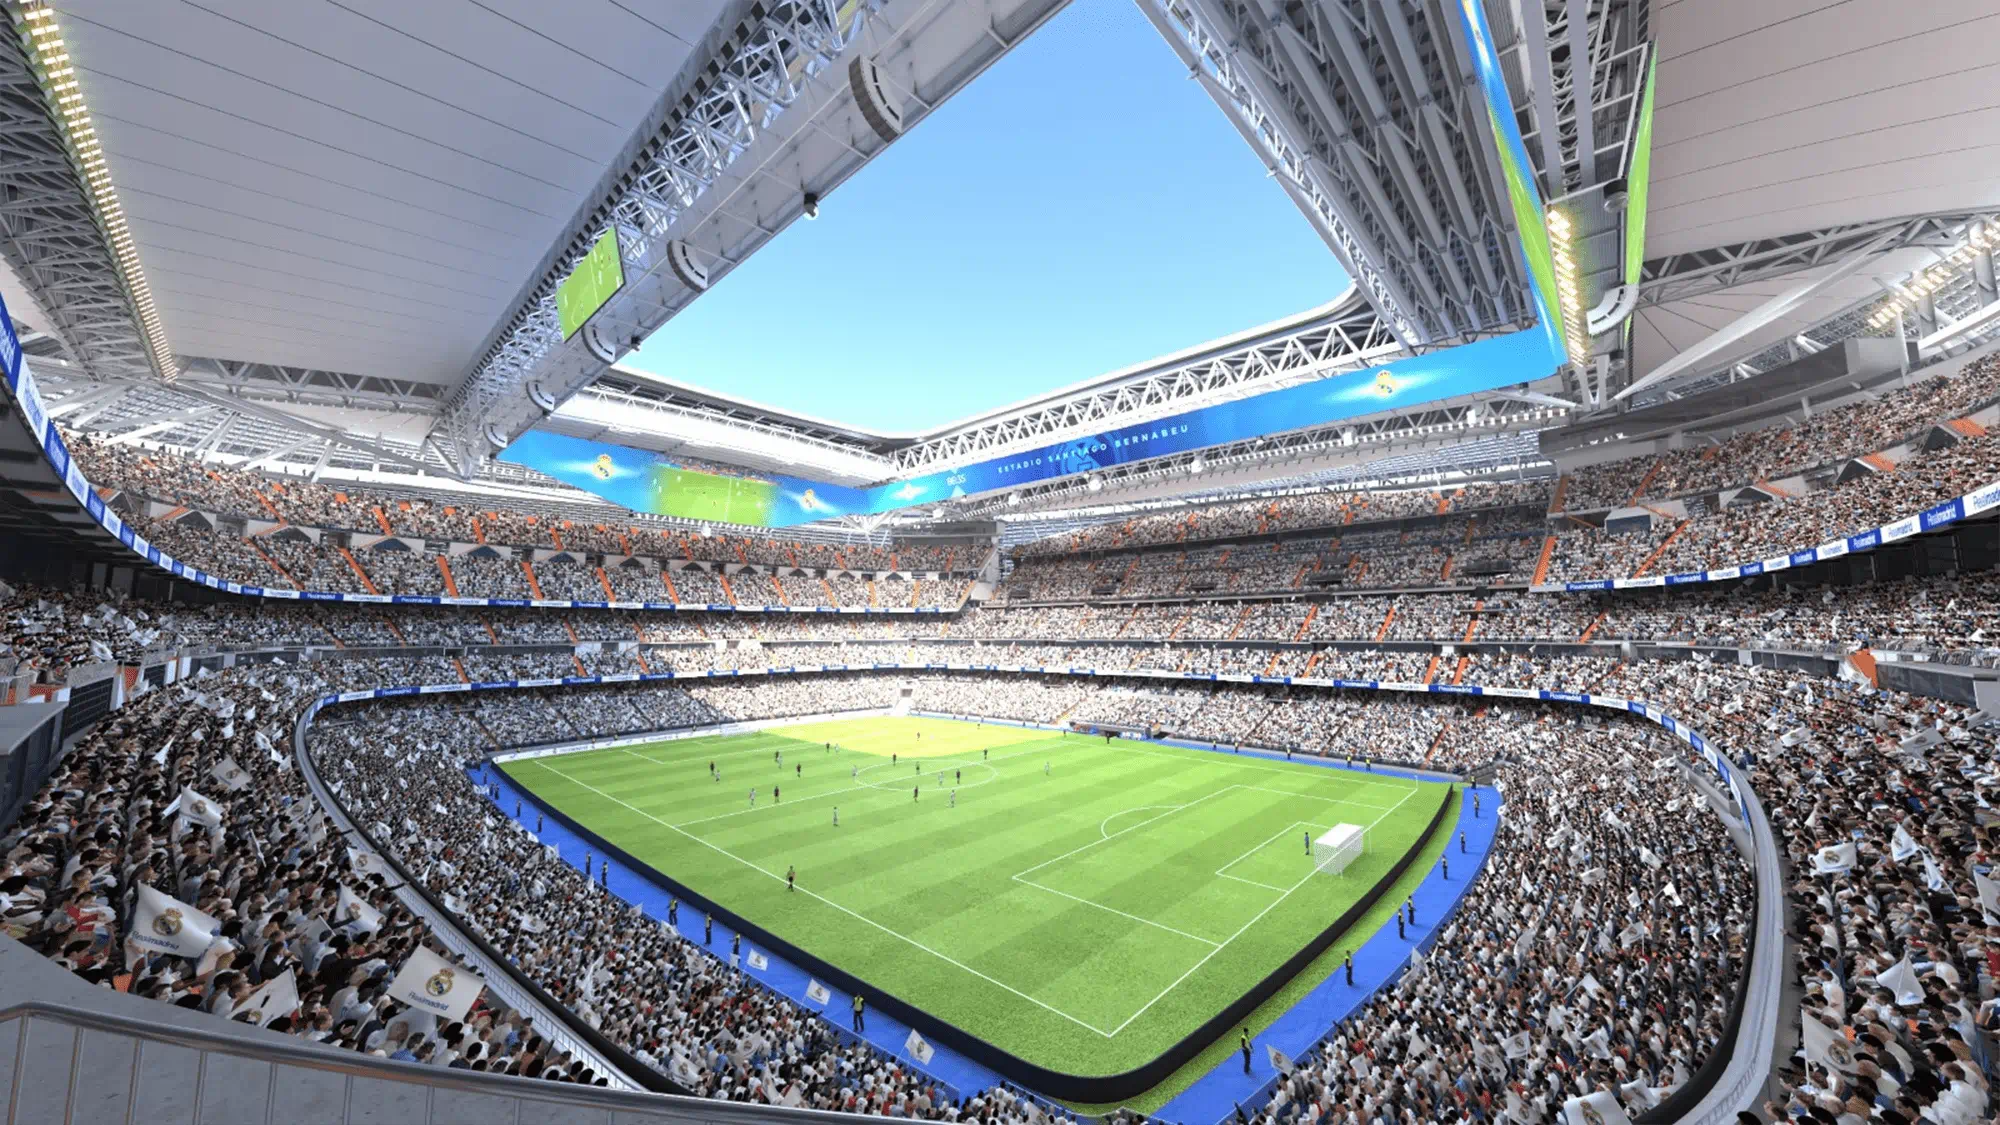 Rehabilitación del Santiago Bernabéu, el emblemático estadio de fútbol  proyectado hacia el futuro - Arup